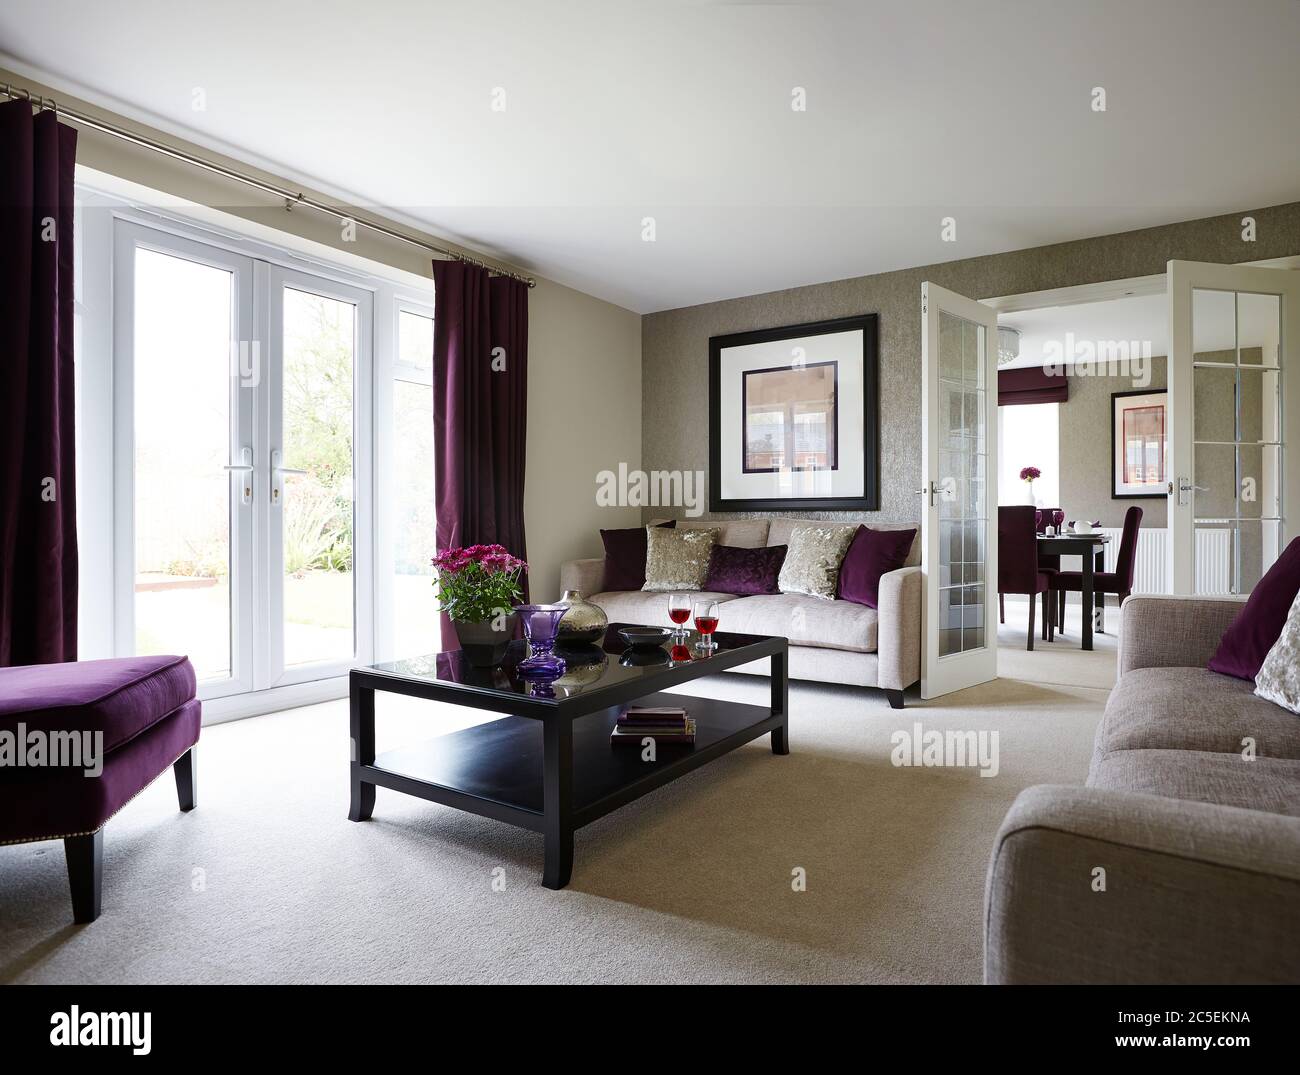 Aufnahme von schönen Innenraum eines Wohnzimmers mit bunten Möbeln Stockfoto